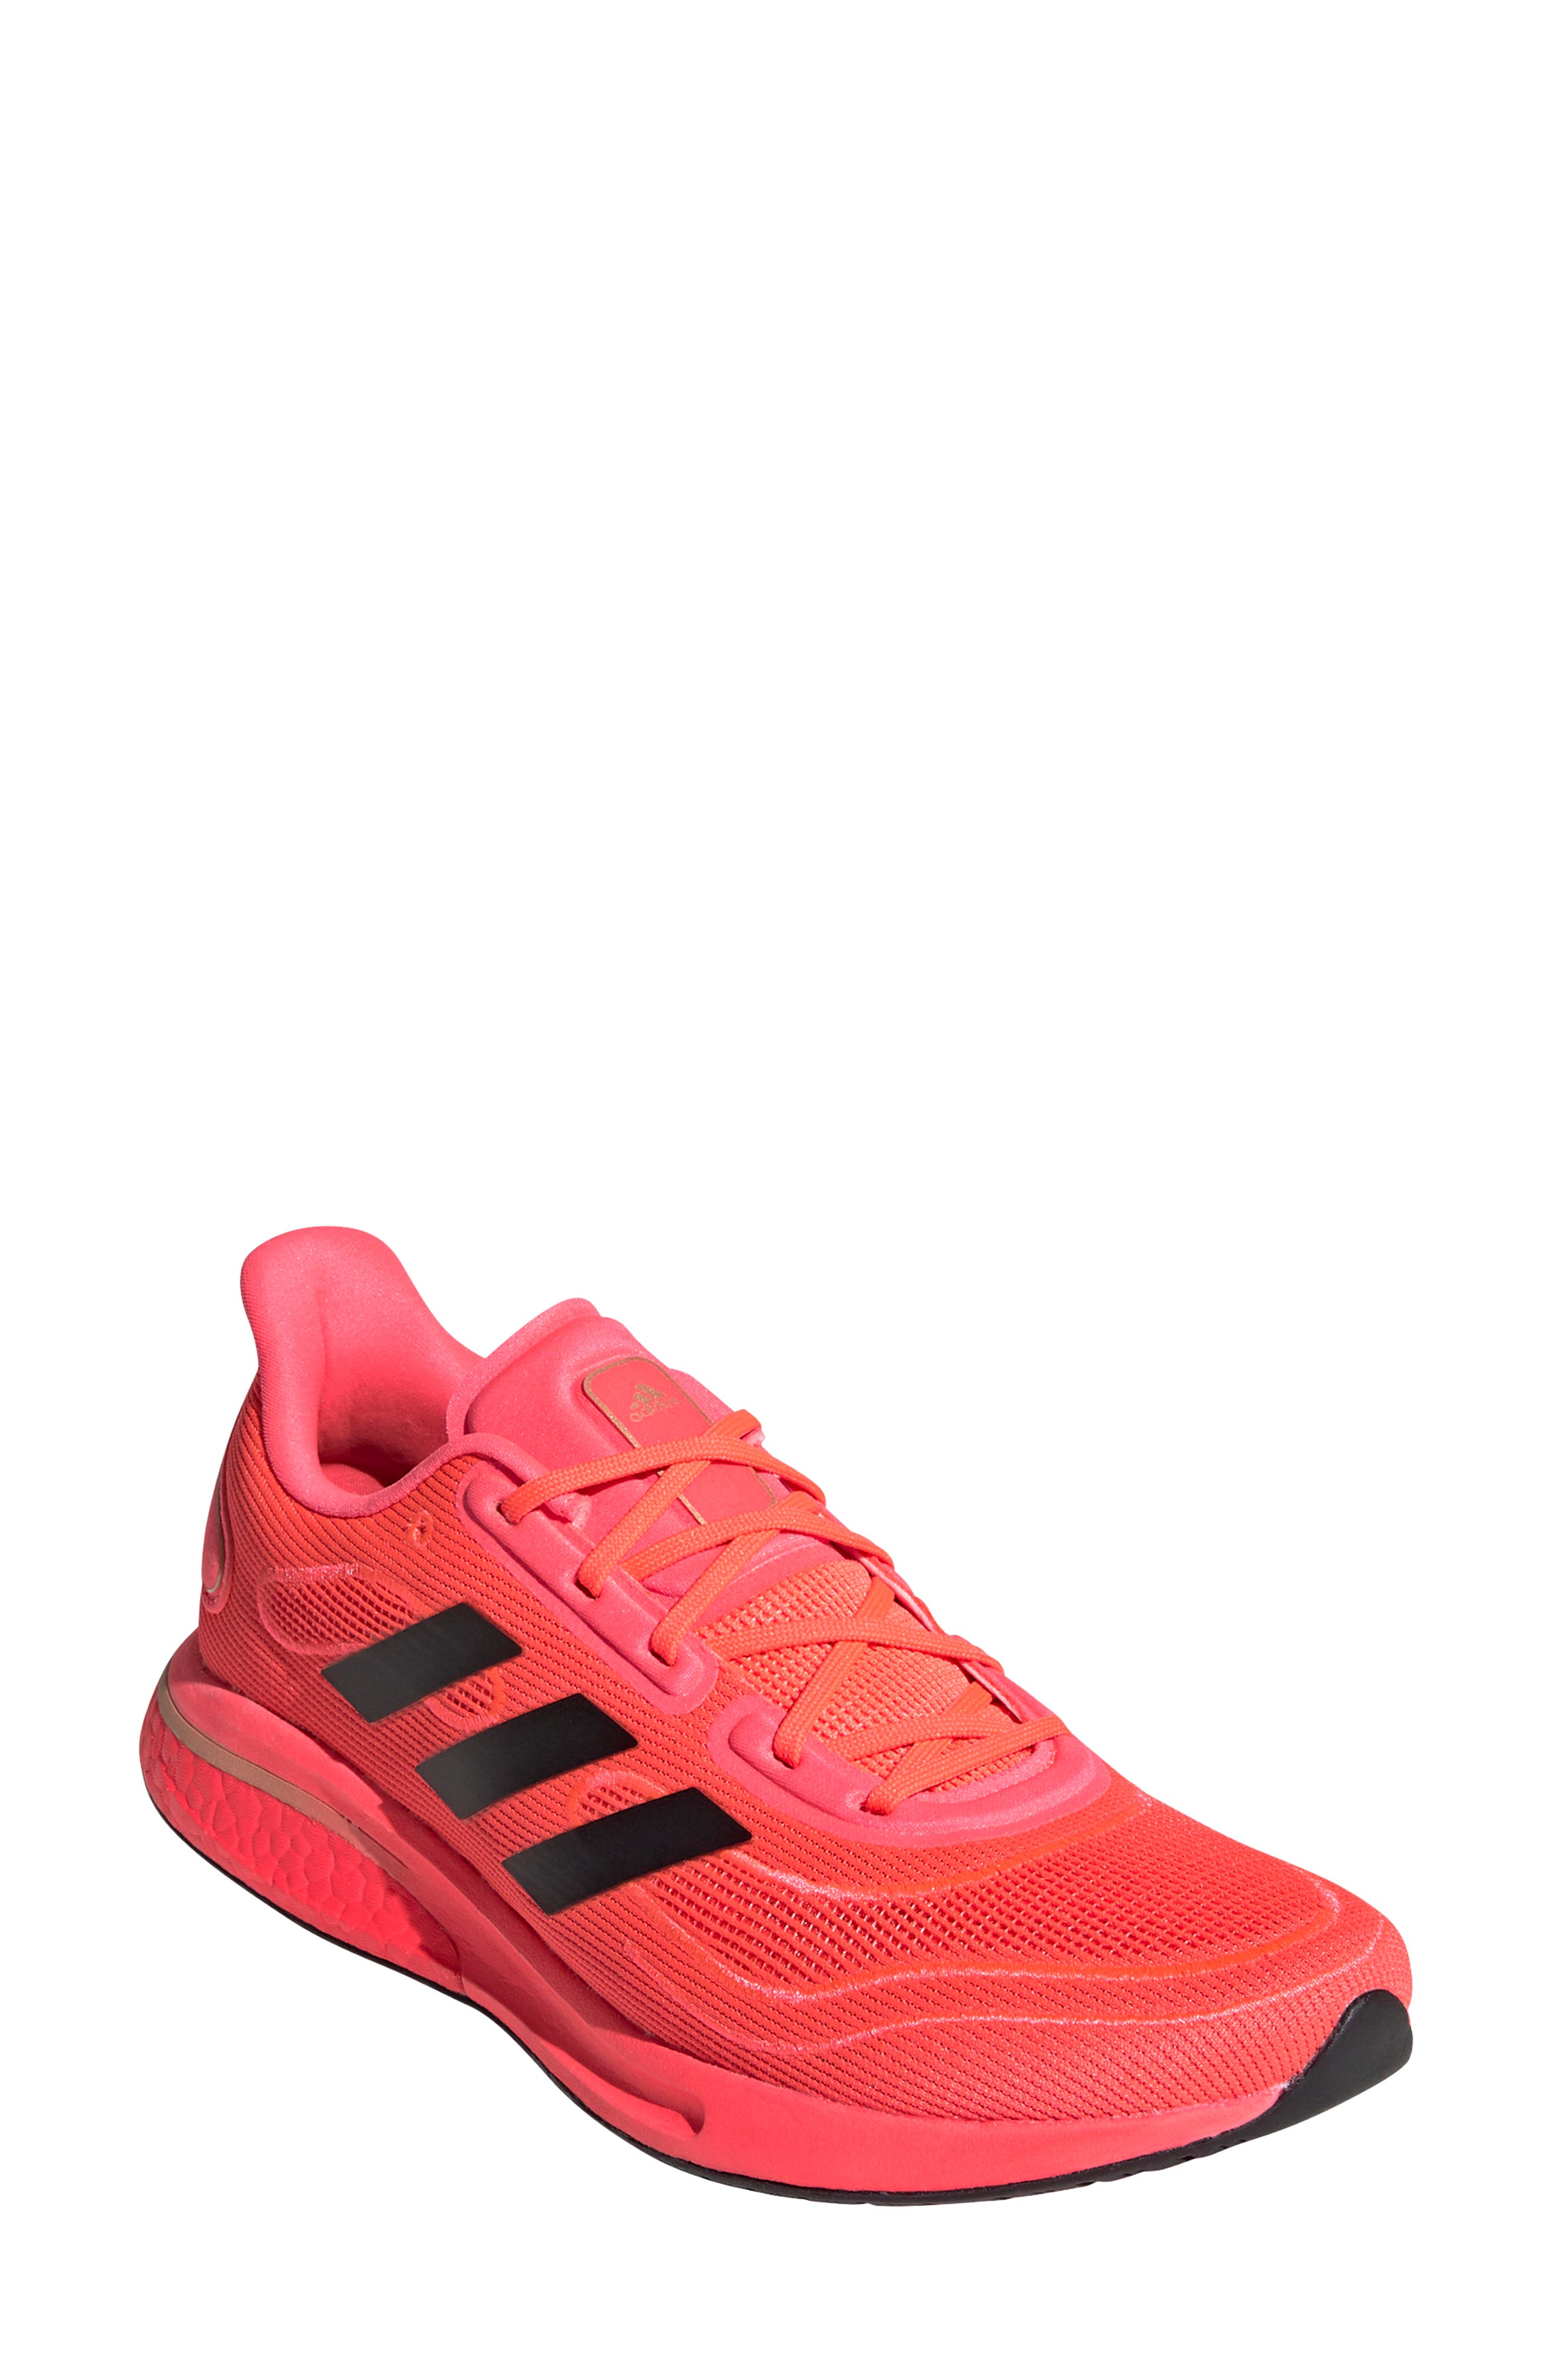 Men's Pink Sneakers \u0026 Athletic Shoes 